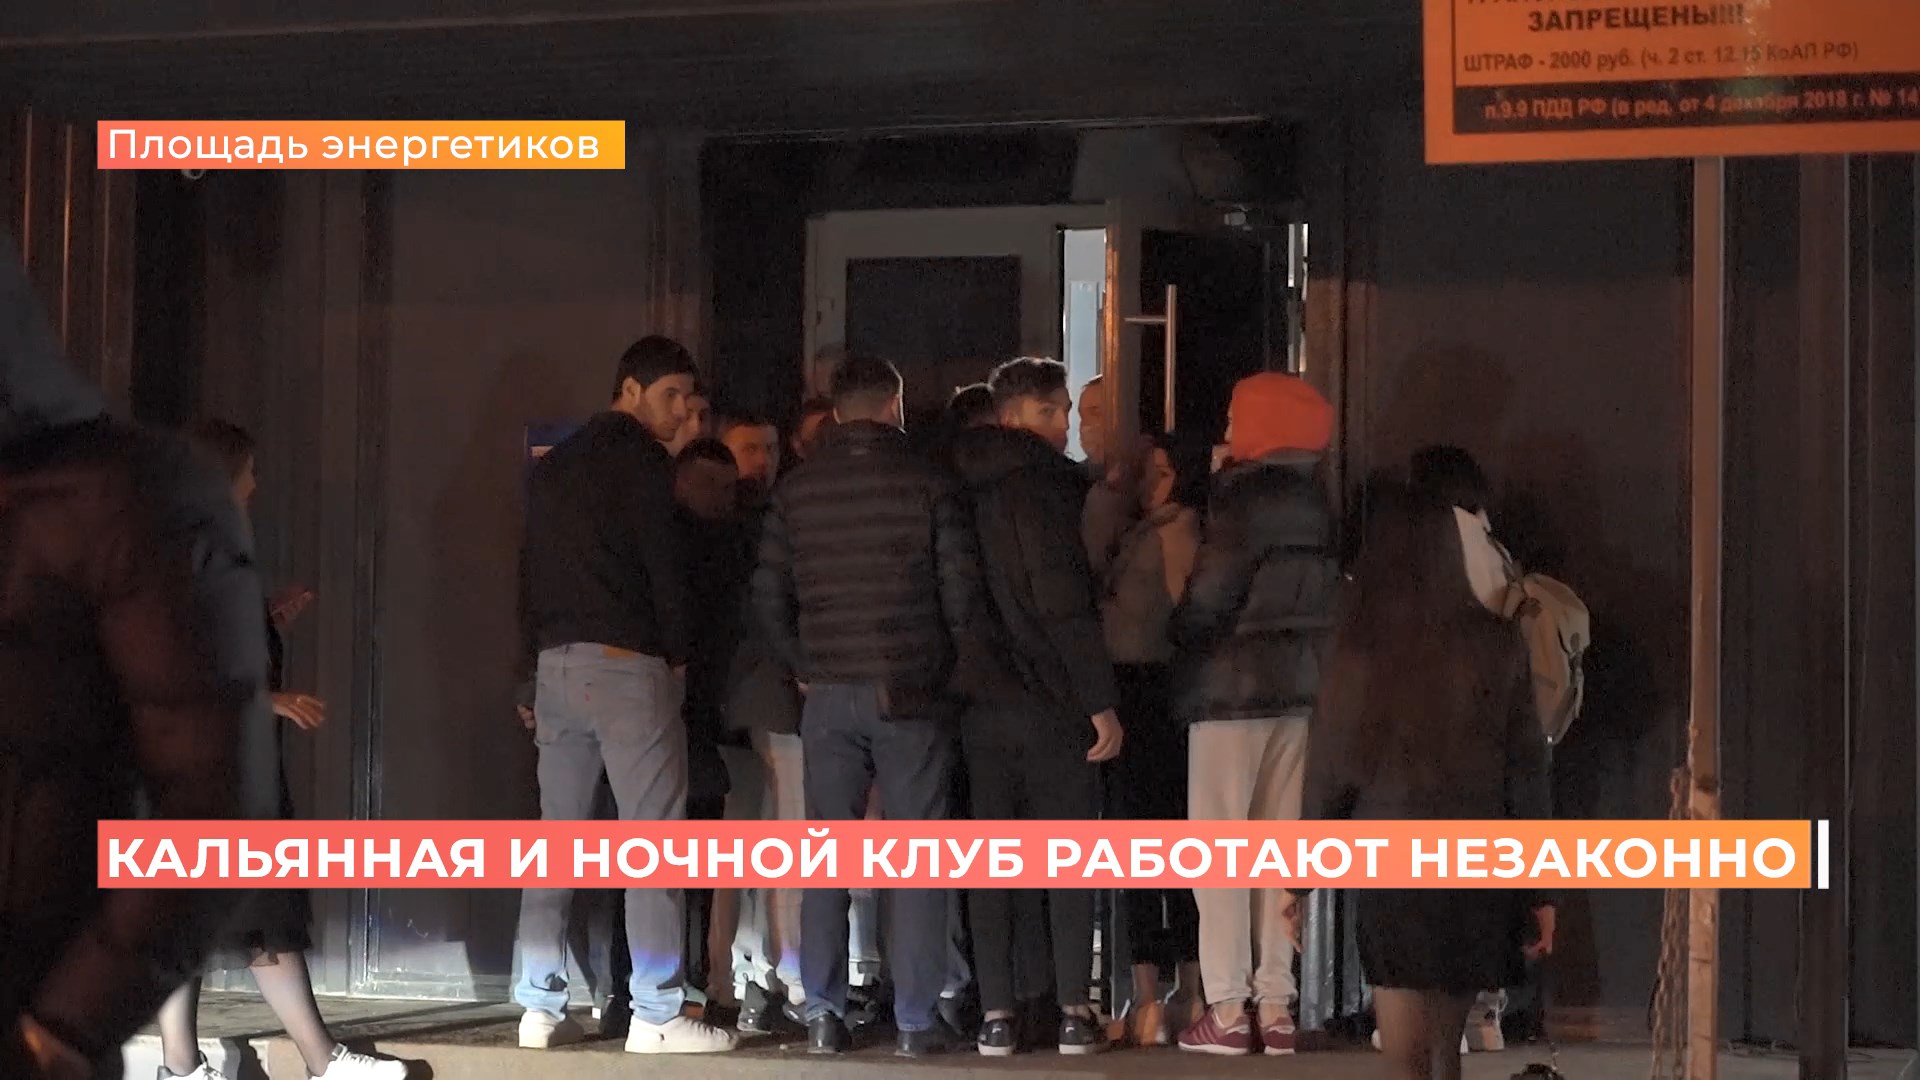 Незаконные гулянья до утра: ростовский общепит штрафуют за нарушение антиковидных ограничений